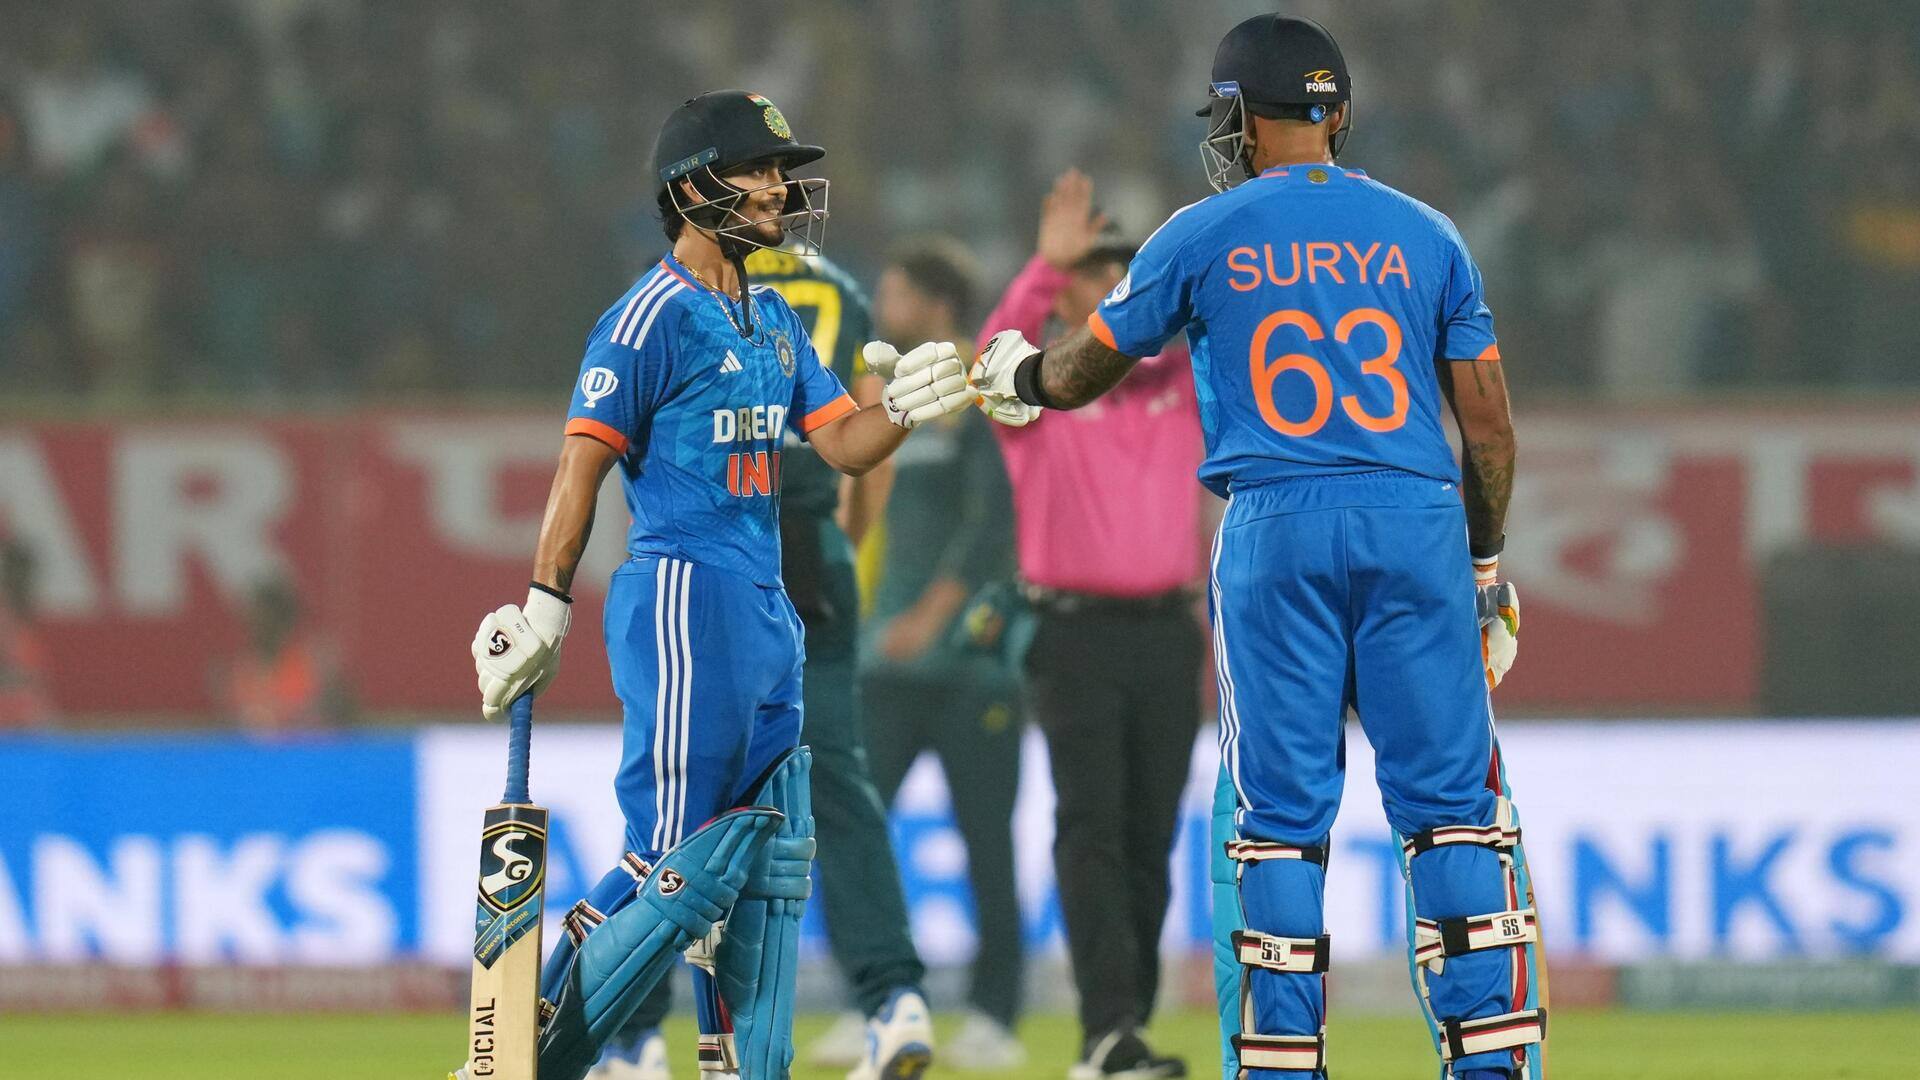 भारतीय टीम ने टी-20 अंतरराष्ट्रीय में सर्वाधिक बार किया 200+ रन के लक्ष्य का सफल पीछा